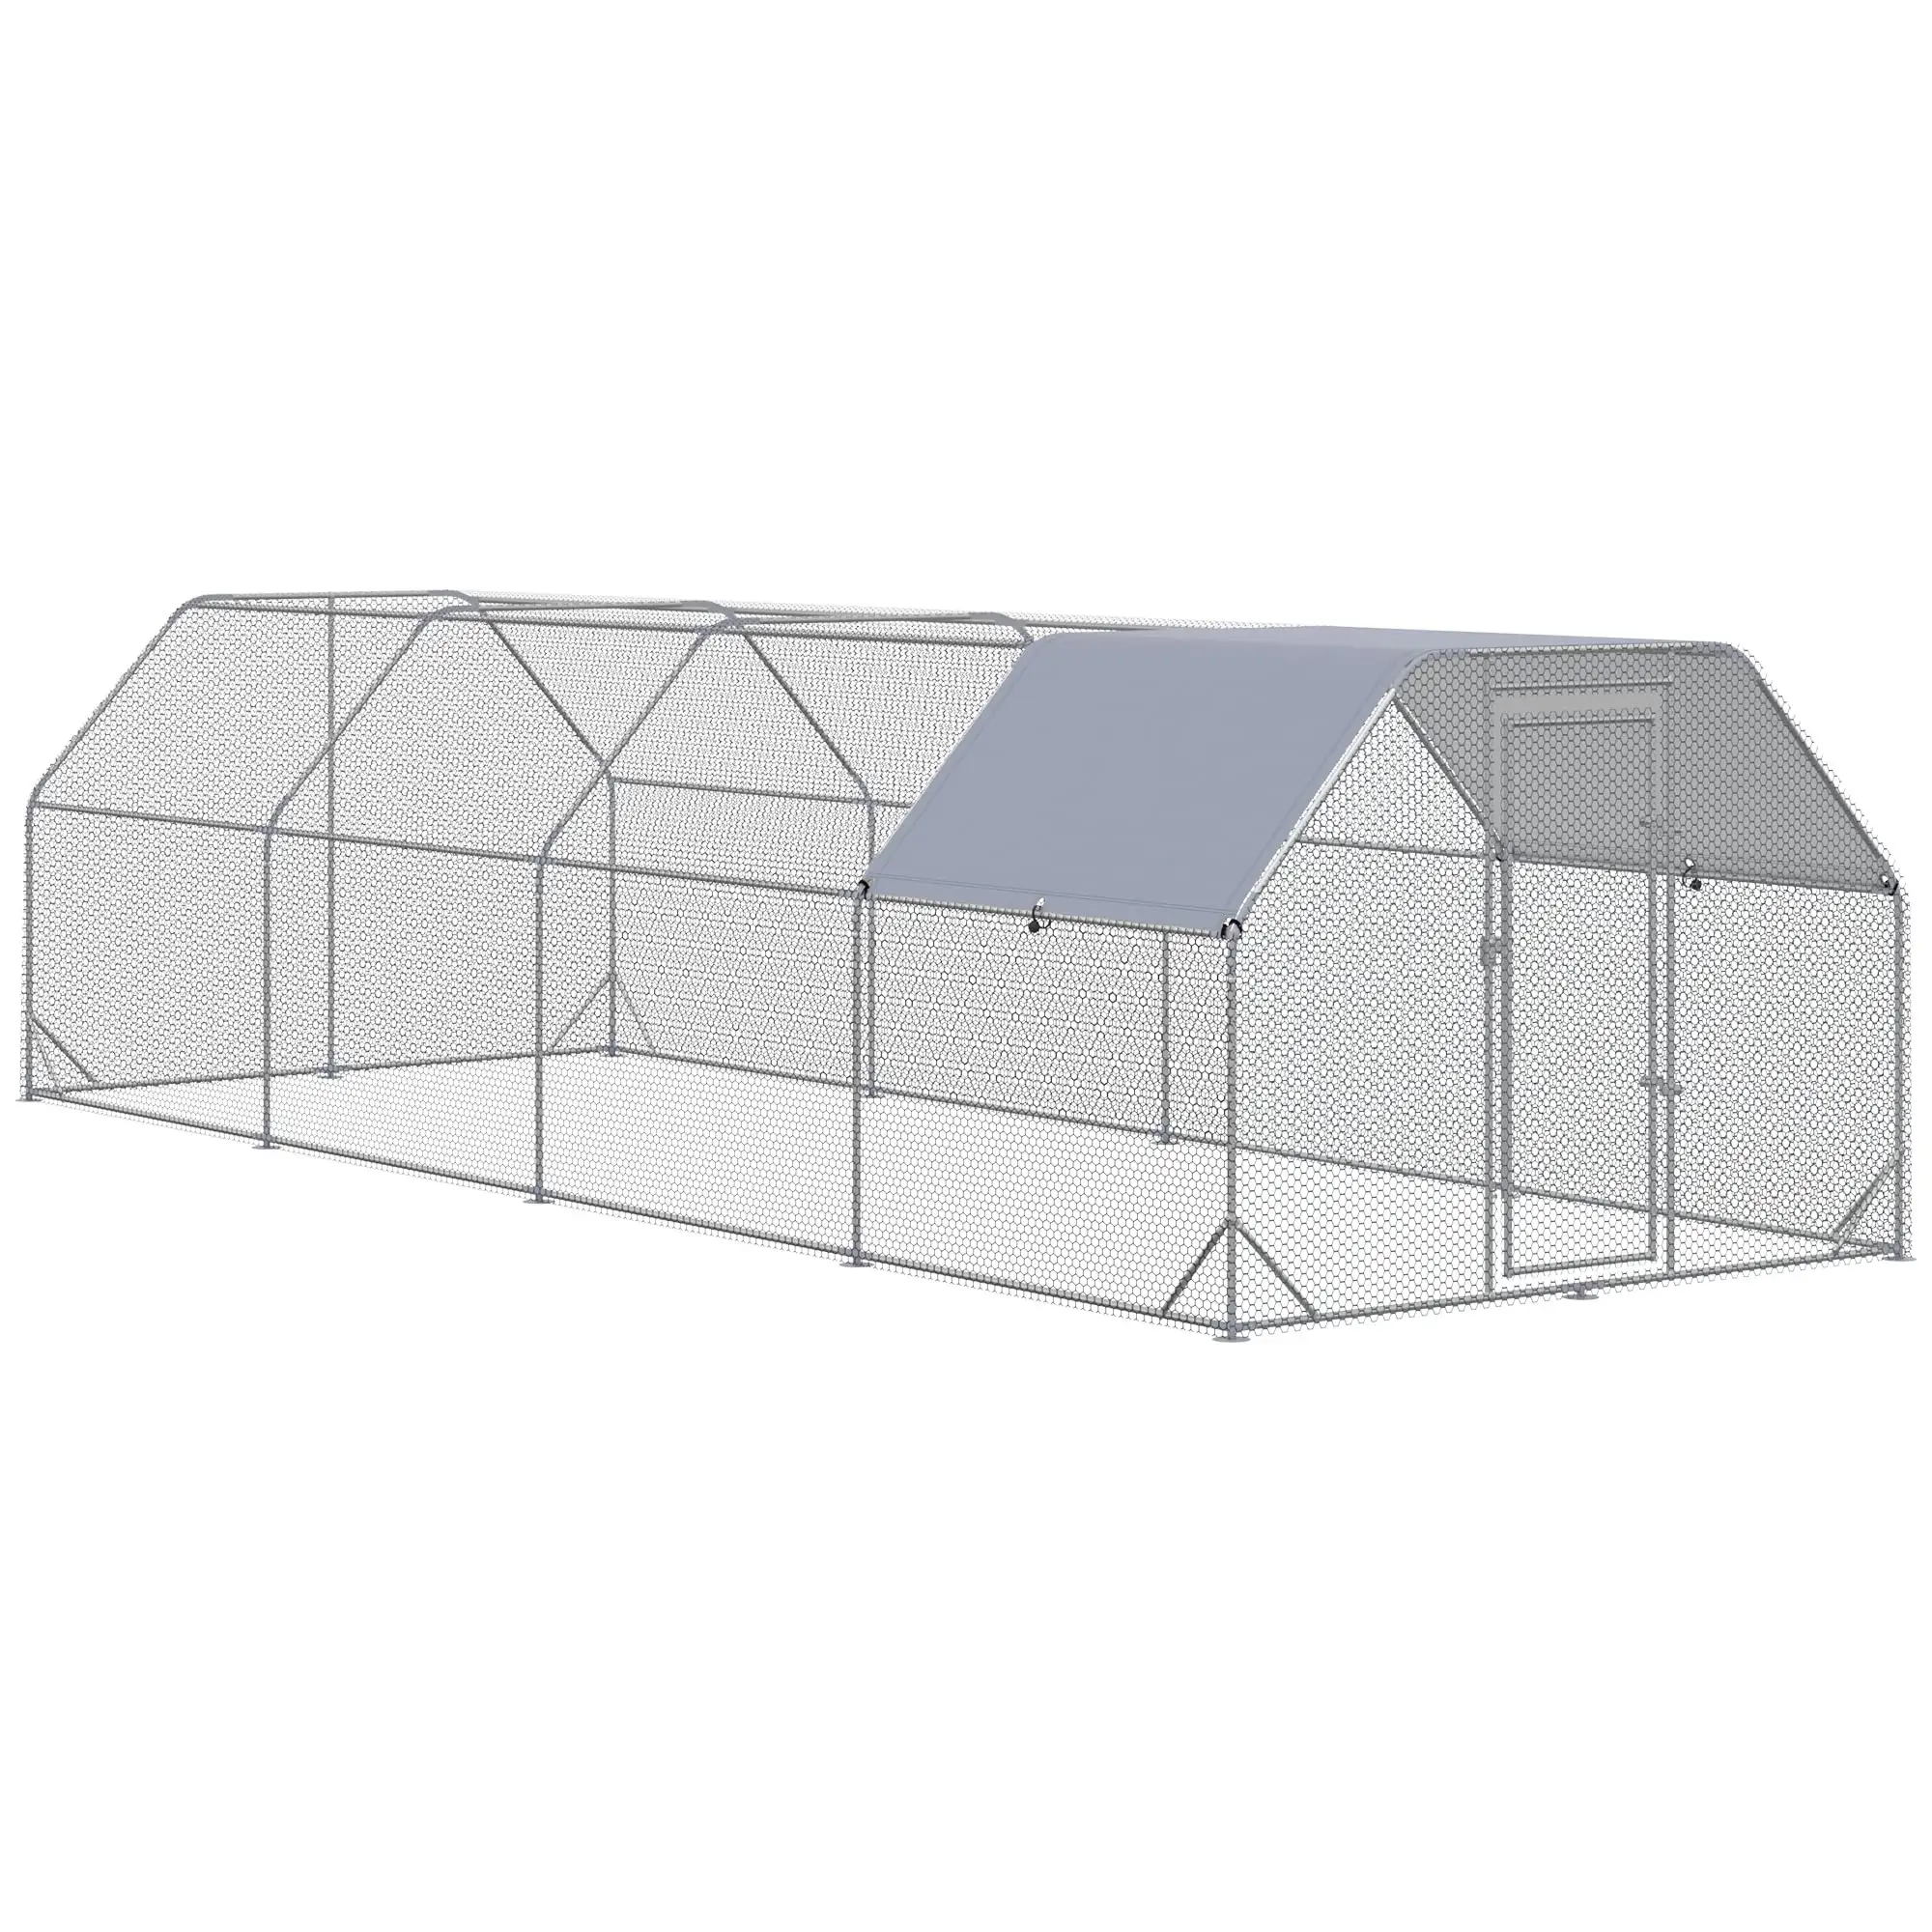 Chilochilo 26.67x10x6.5ft büyük Metal tavuk kümesi kapak ile çalıştırmak Walk-in açık kalem çit kafes tavuk evi çatı ile Yard için